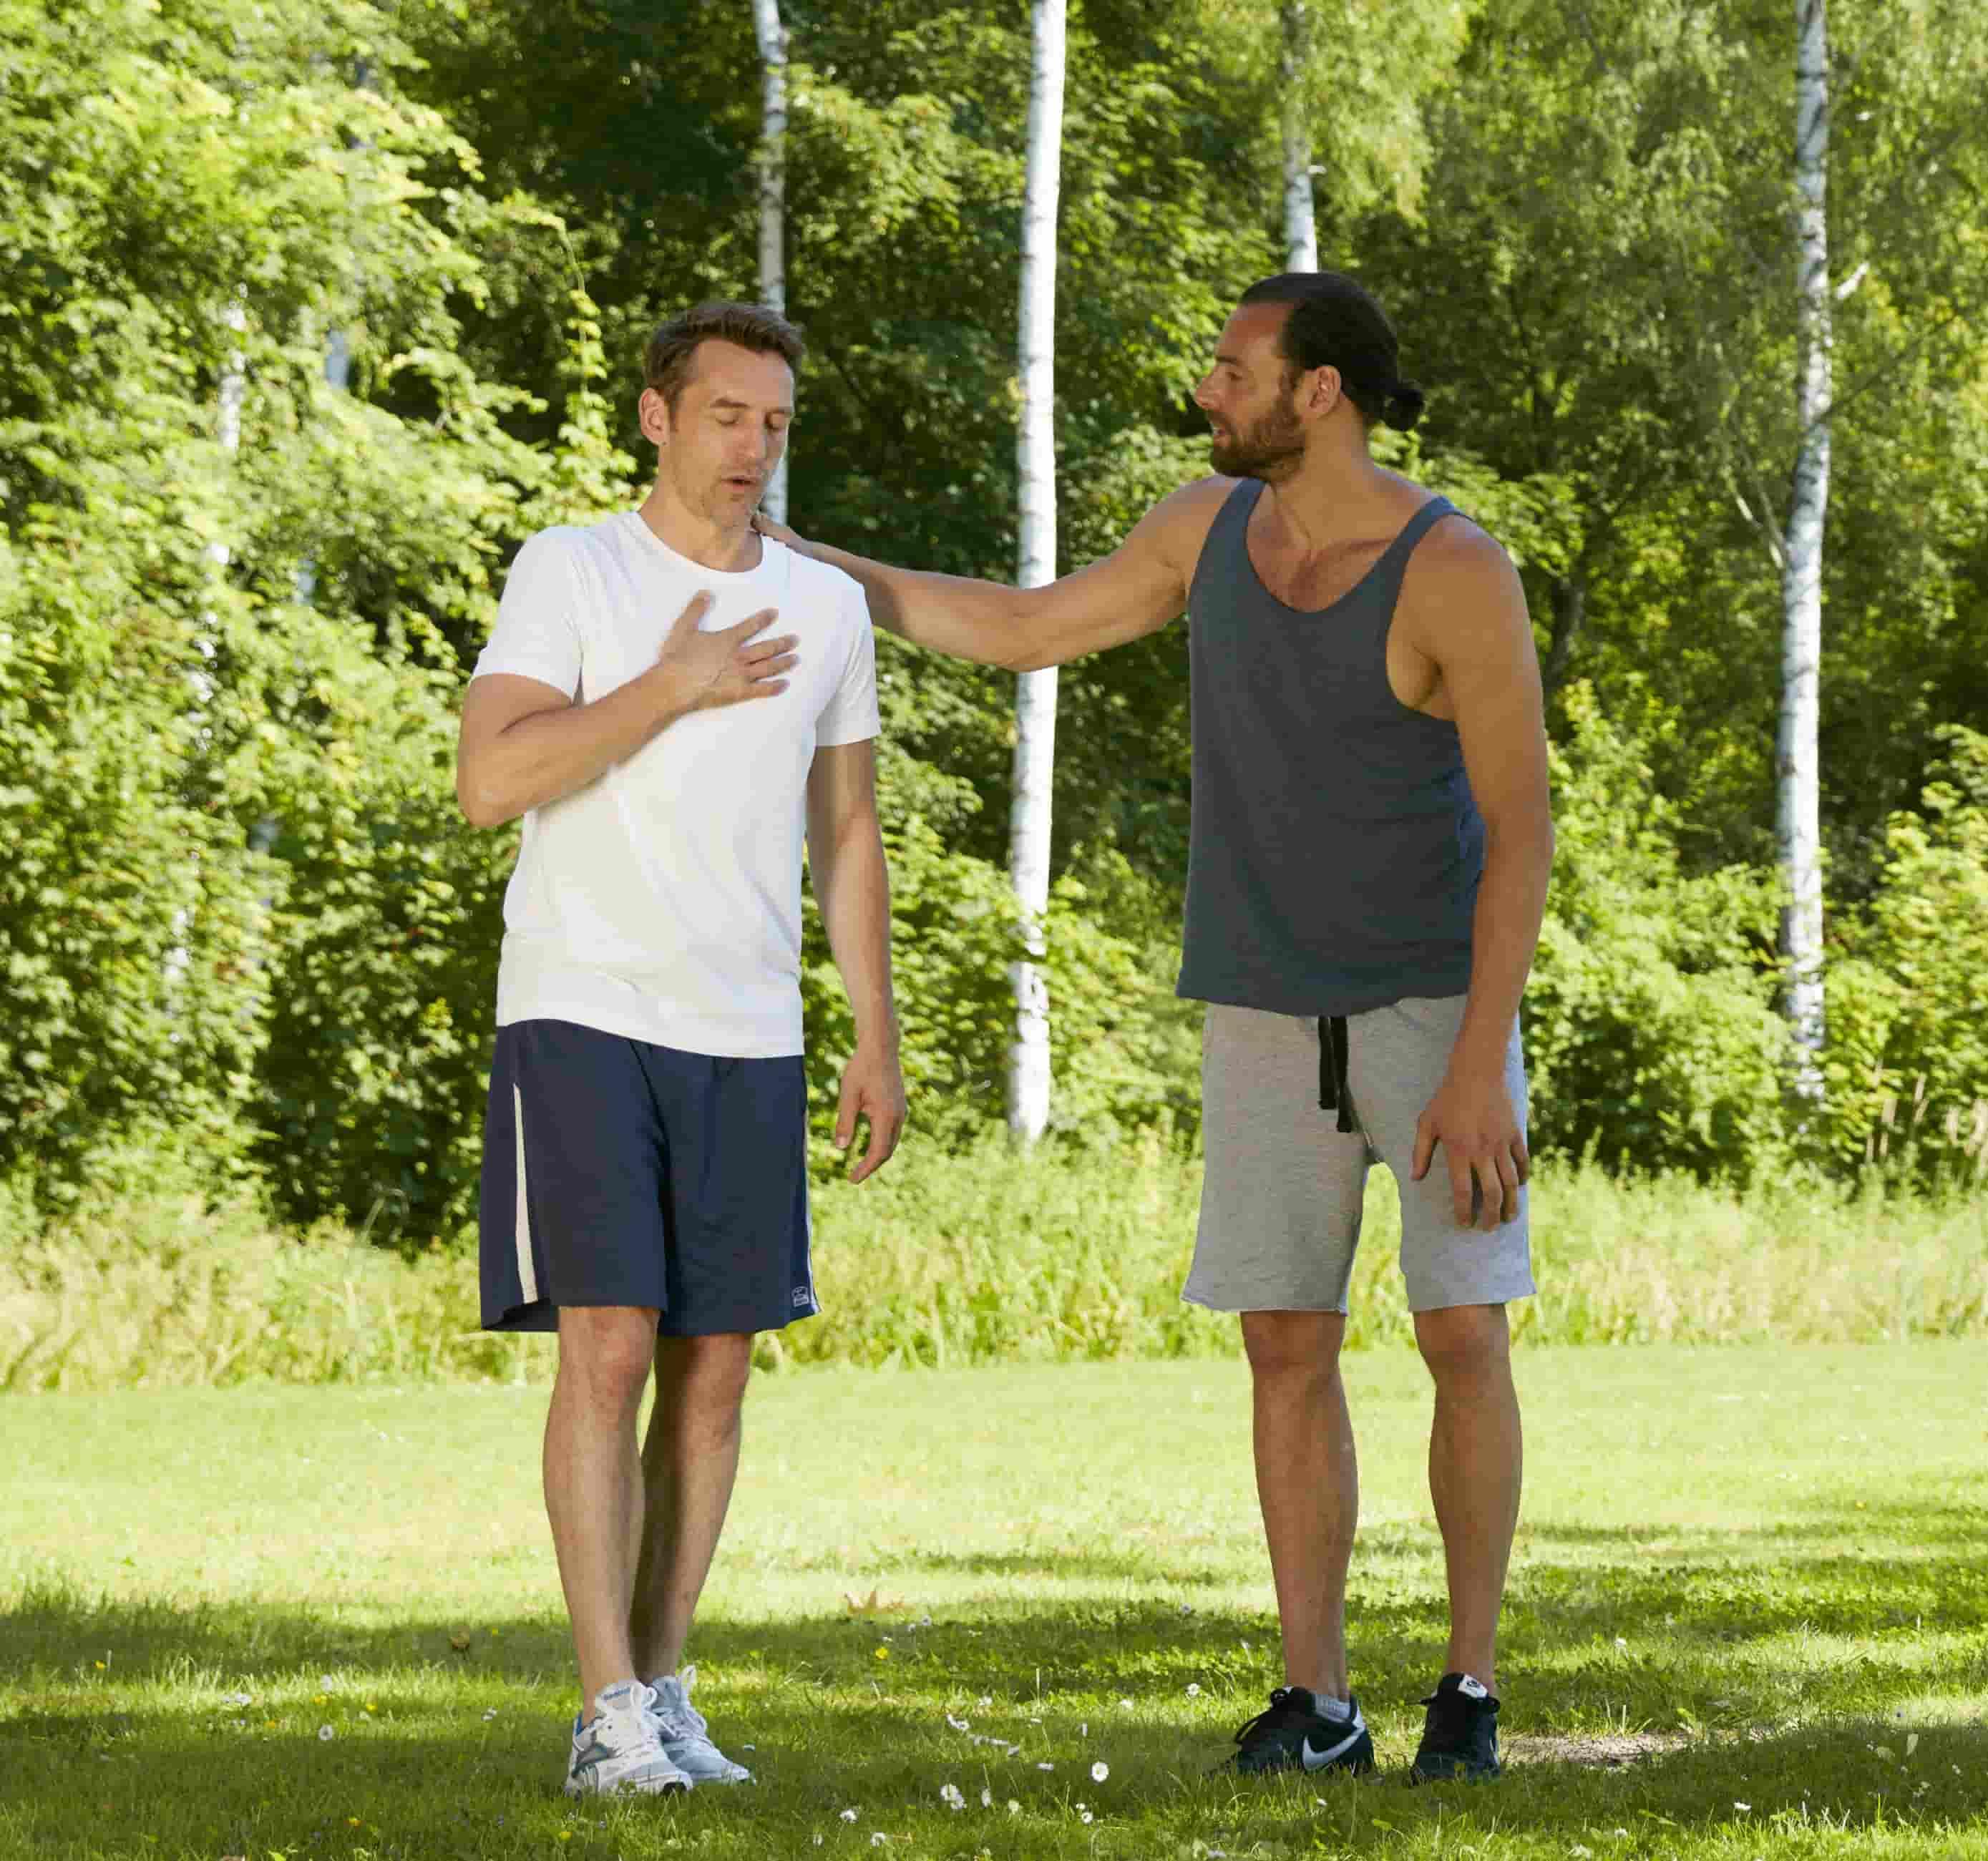 Na foto, há dois homens com roupas de atividade física em um parque. Um deles, a esquerda, está com a mão no peito, demostrando estar passando mal. O outro está com a mão em seu ombro, amparando-o.